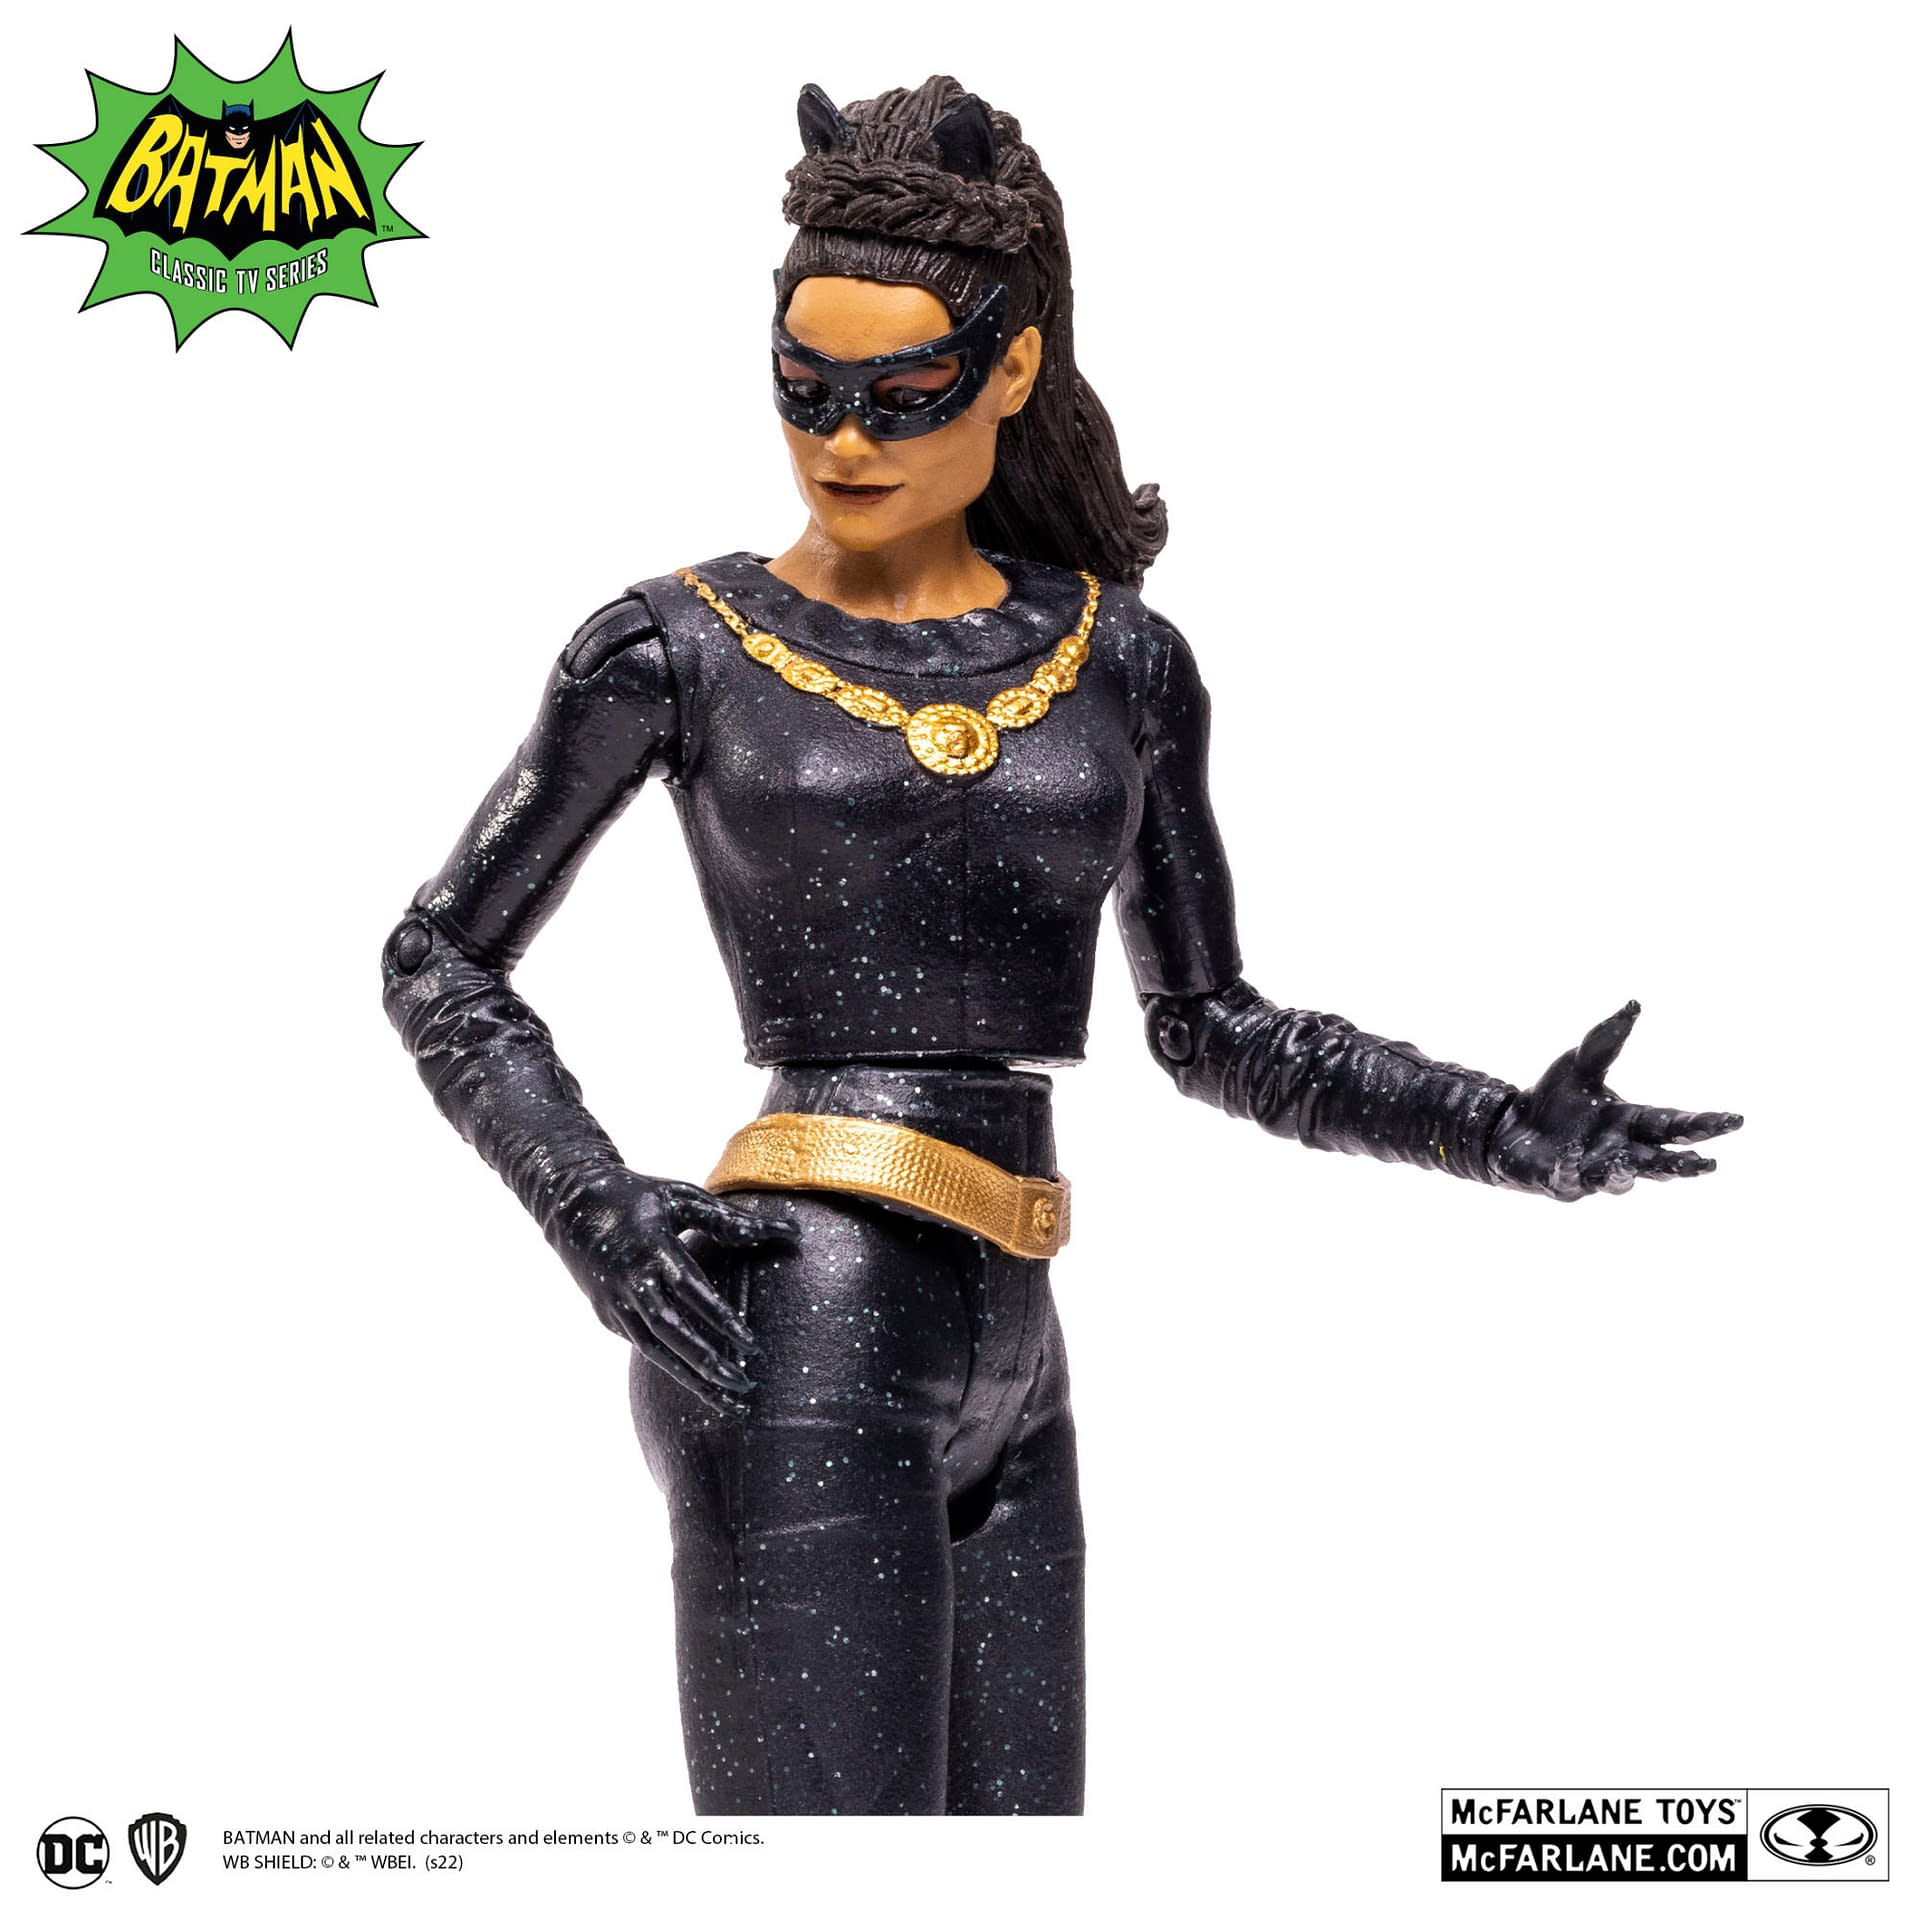 McFarlane Toys Reveals Catwoman and Penguin Batman 66’ Figures